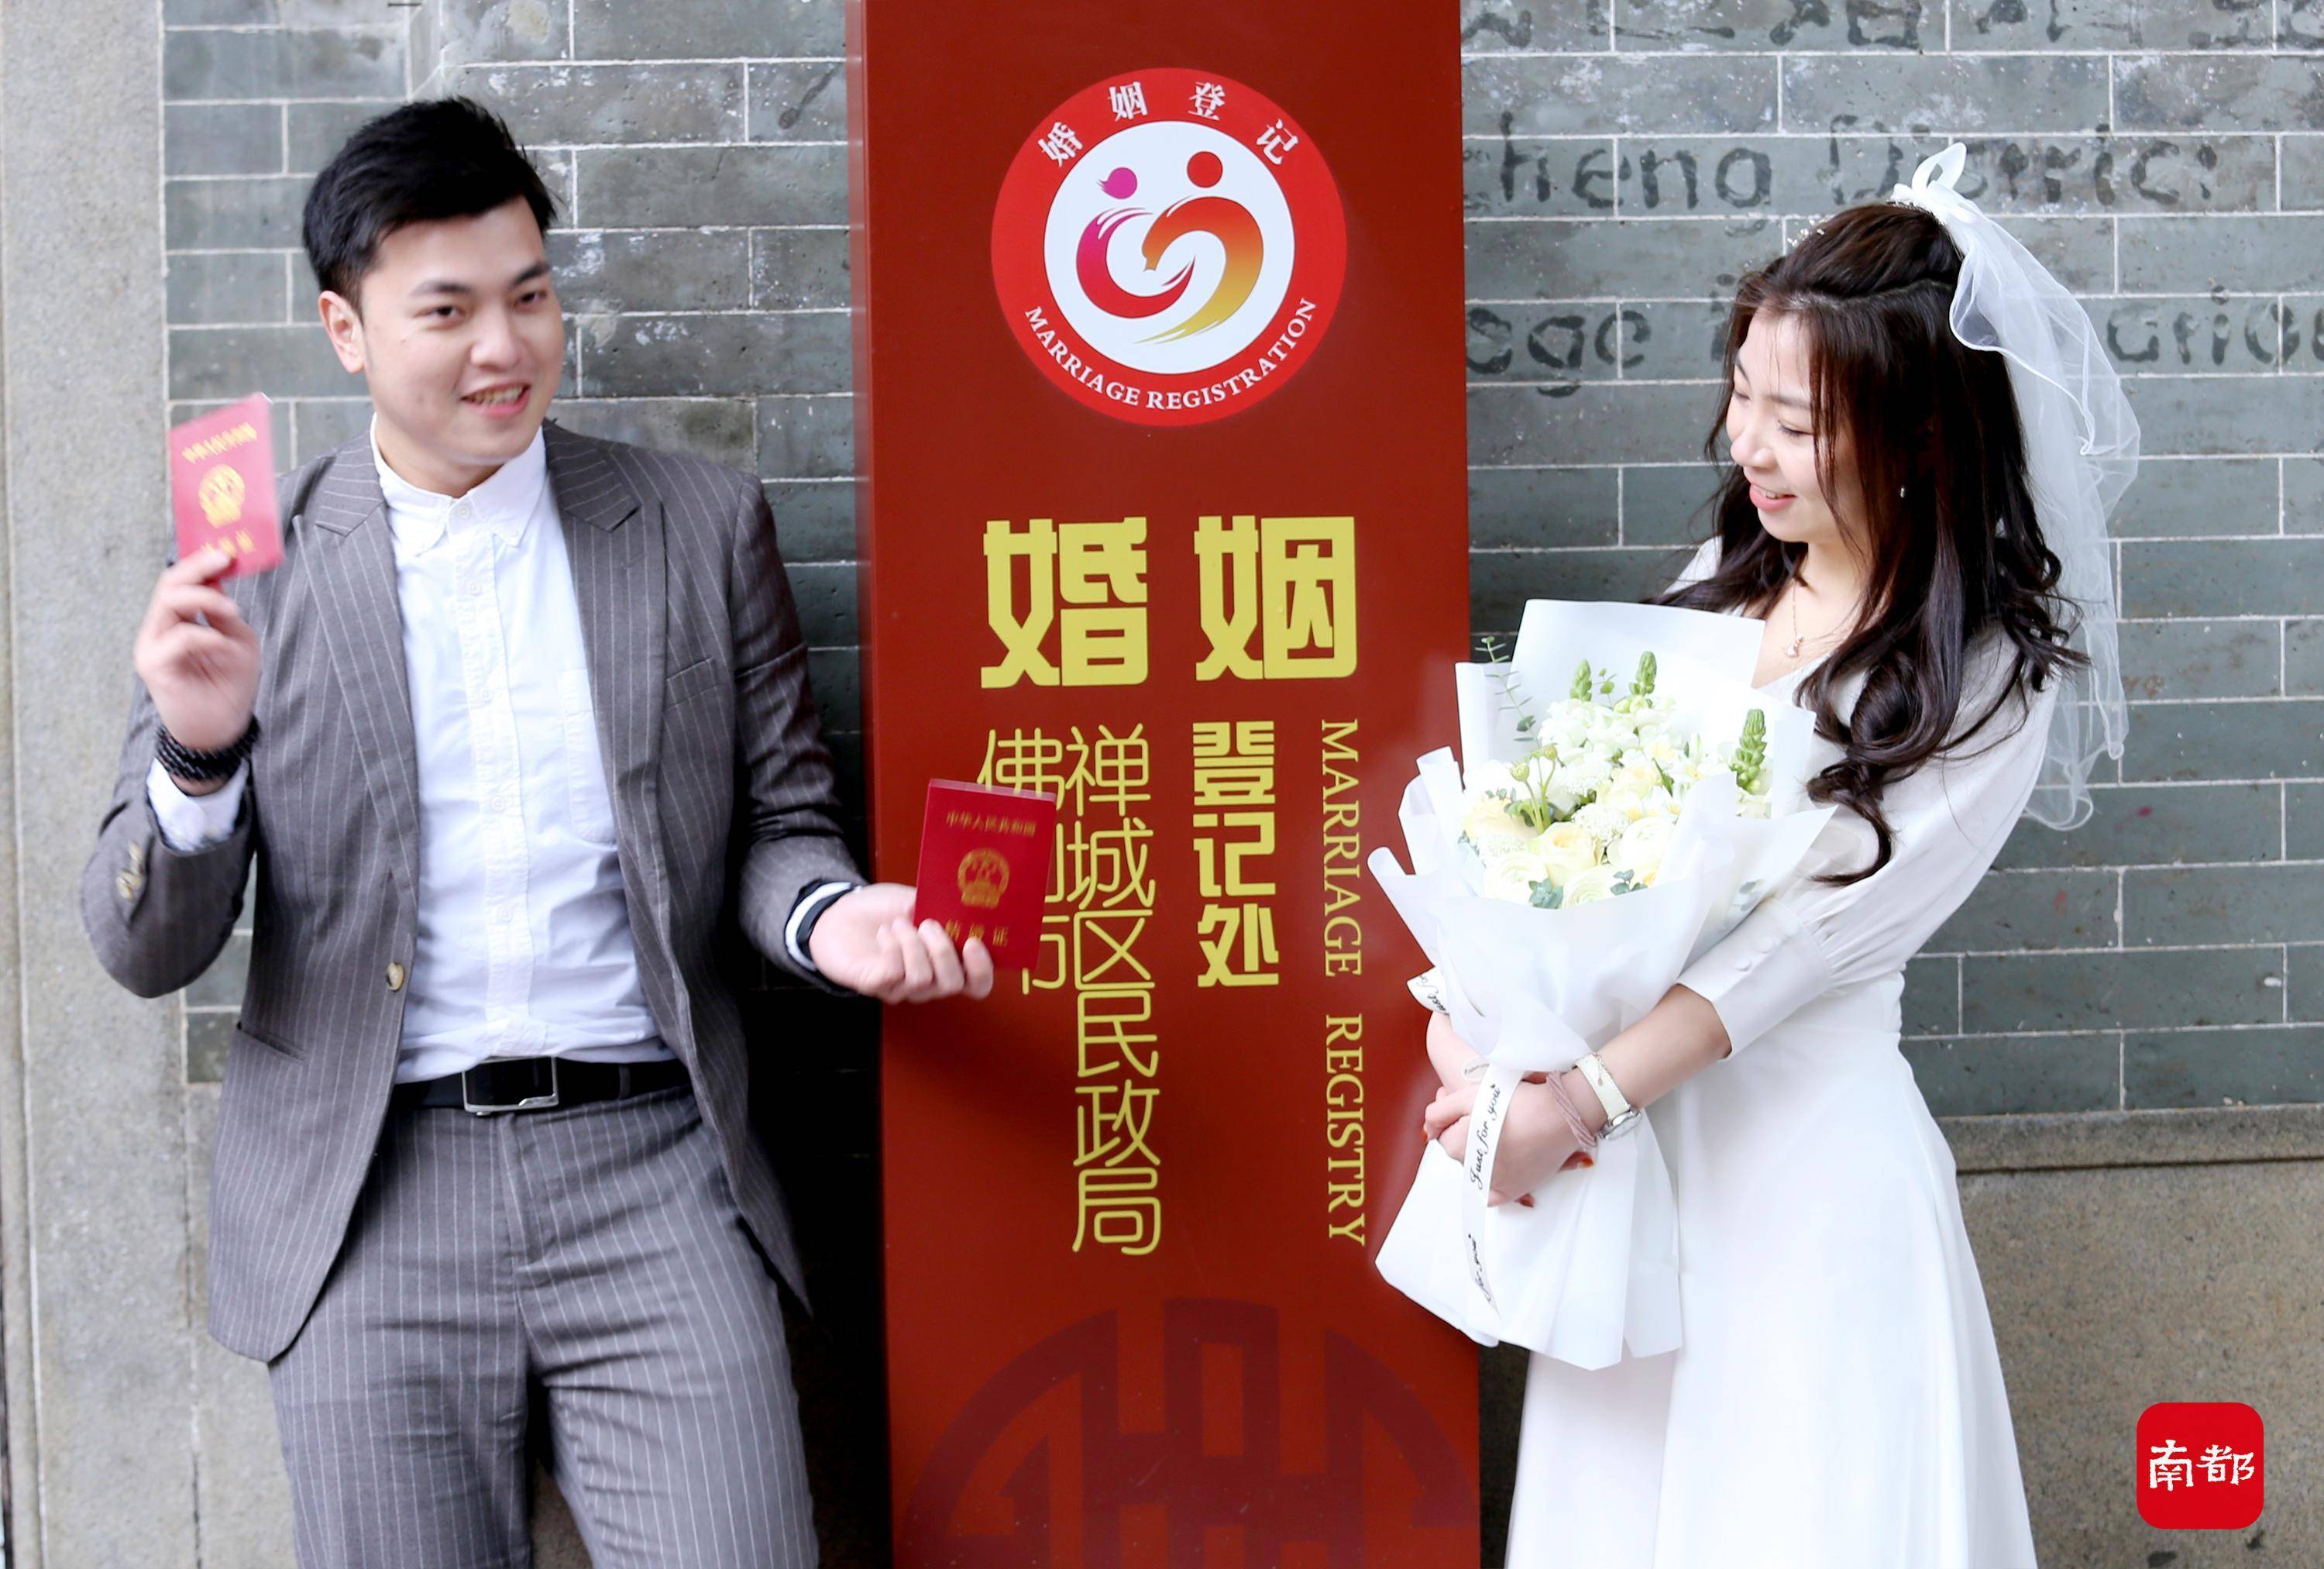 广州婚姻网_广州婚姻预约网上登记平台_广州婚姻咨询电话